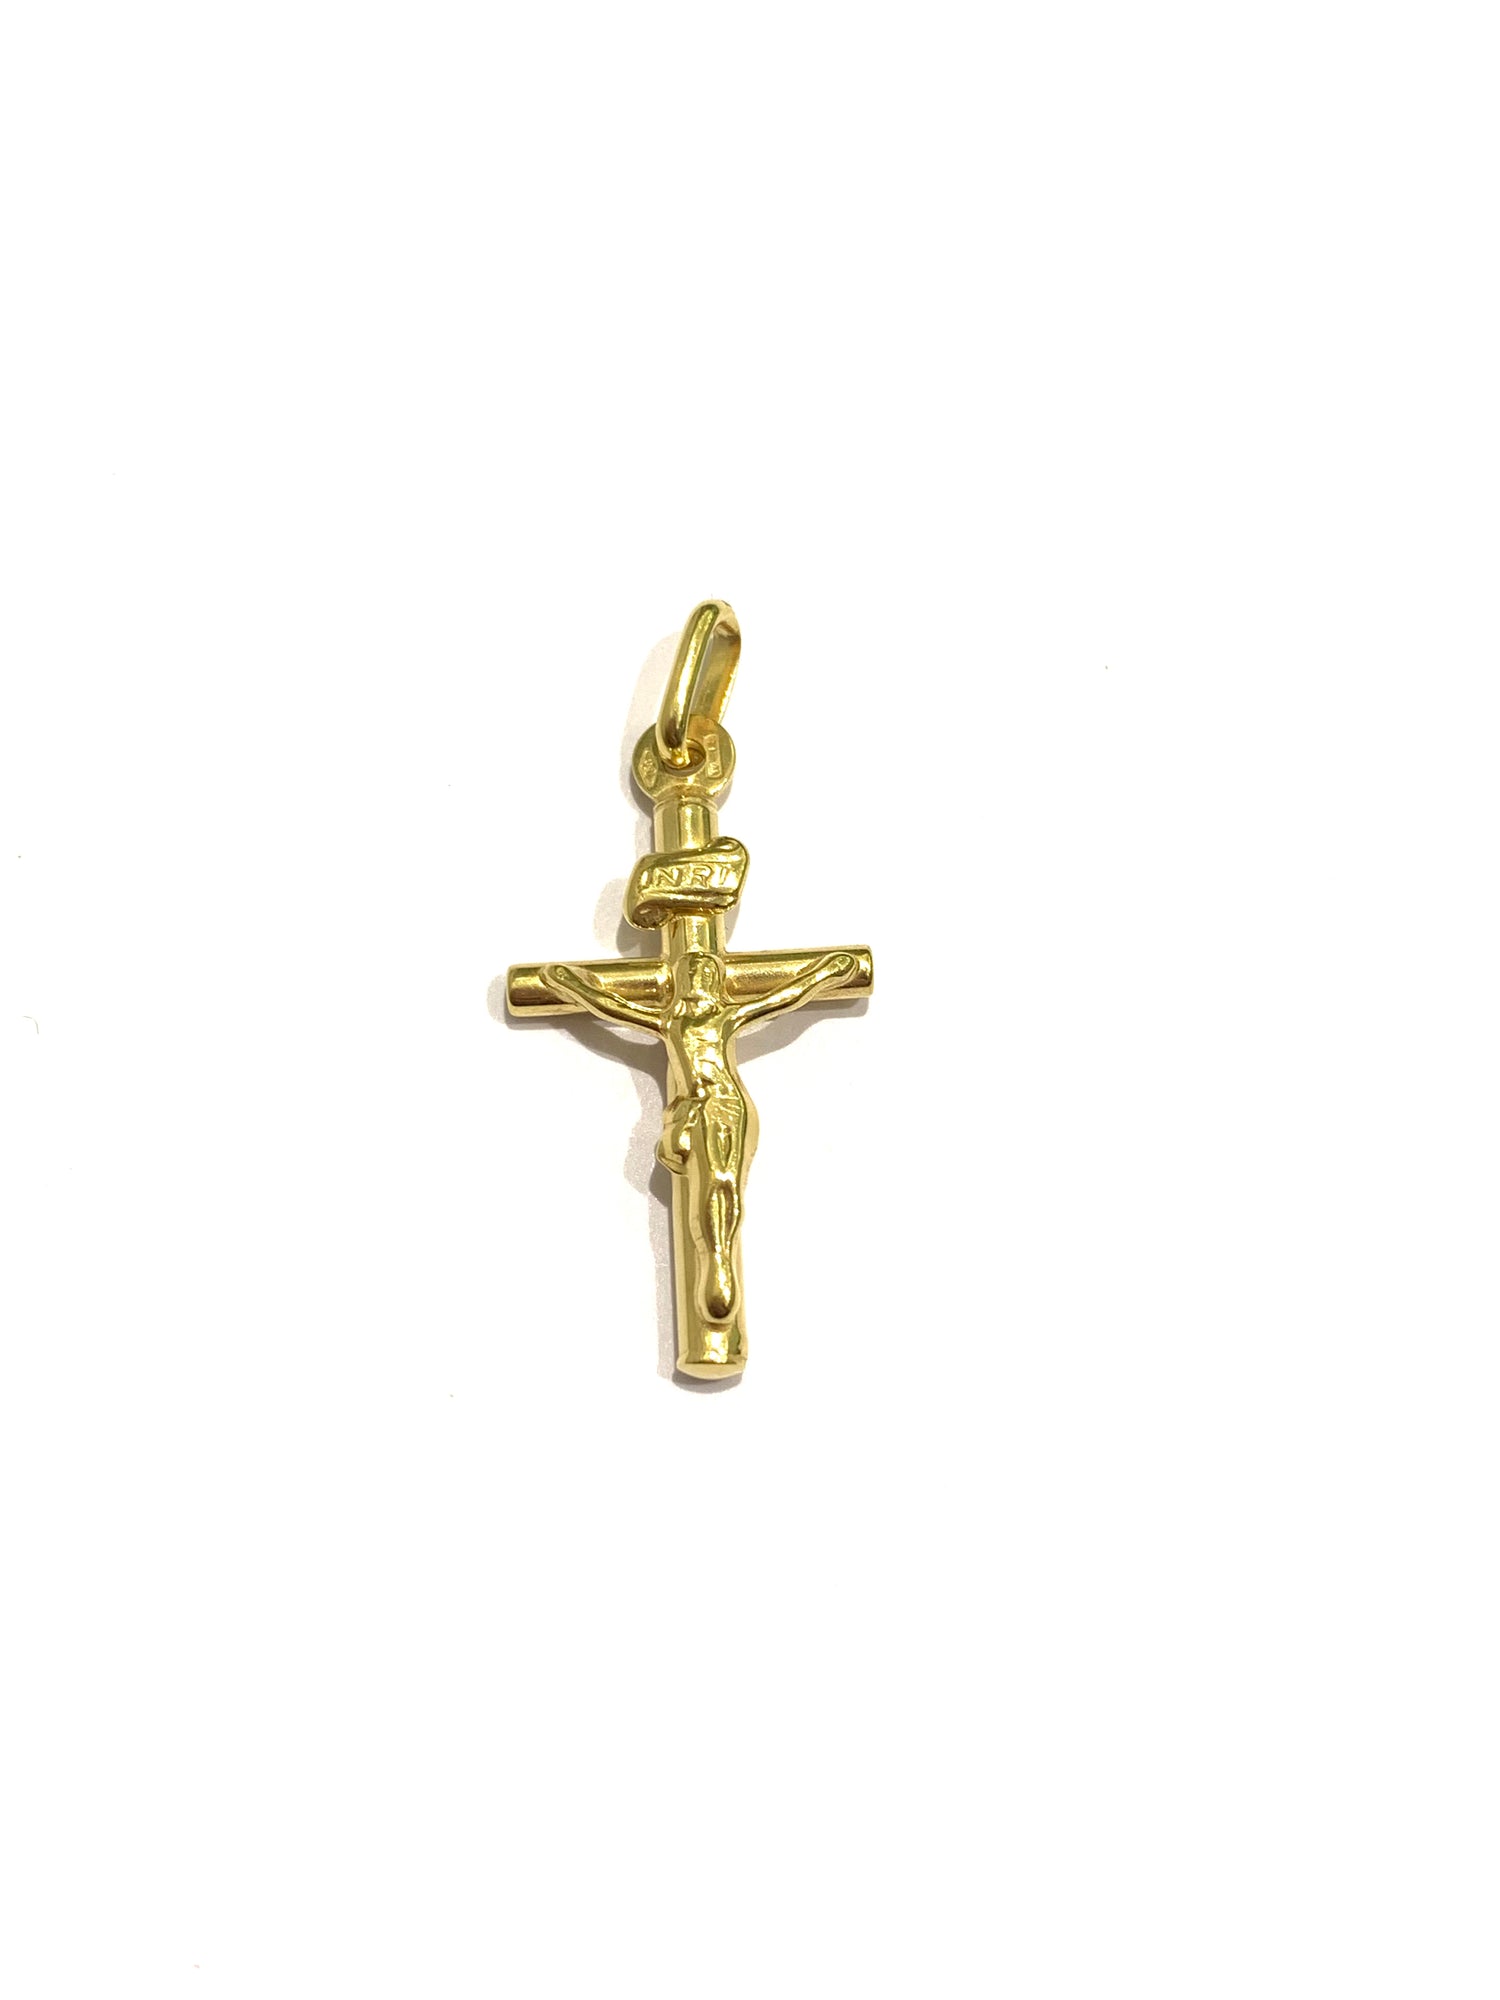 Ciondolo per collana in oro giallo 18kt con croce con Cristo e scritta “INRI”.  Dimensione 1,3x2,8 cm incluso 0,8 cm di anellino.  